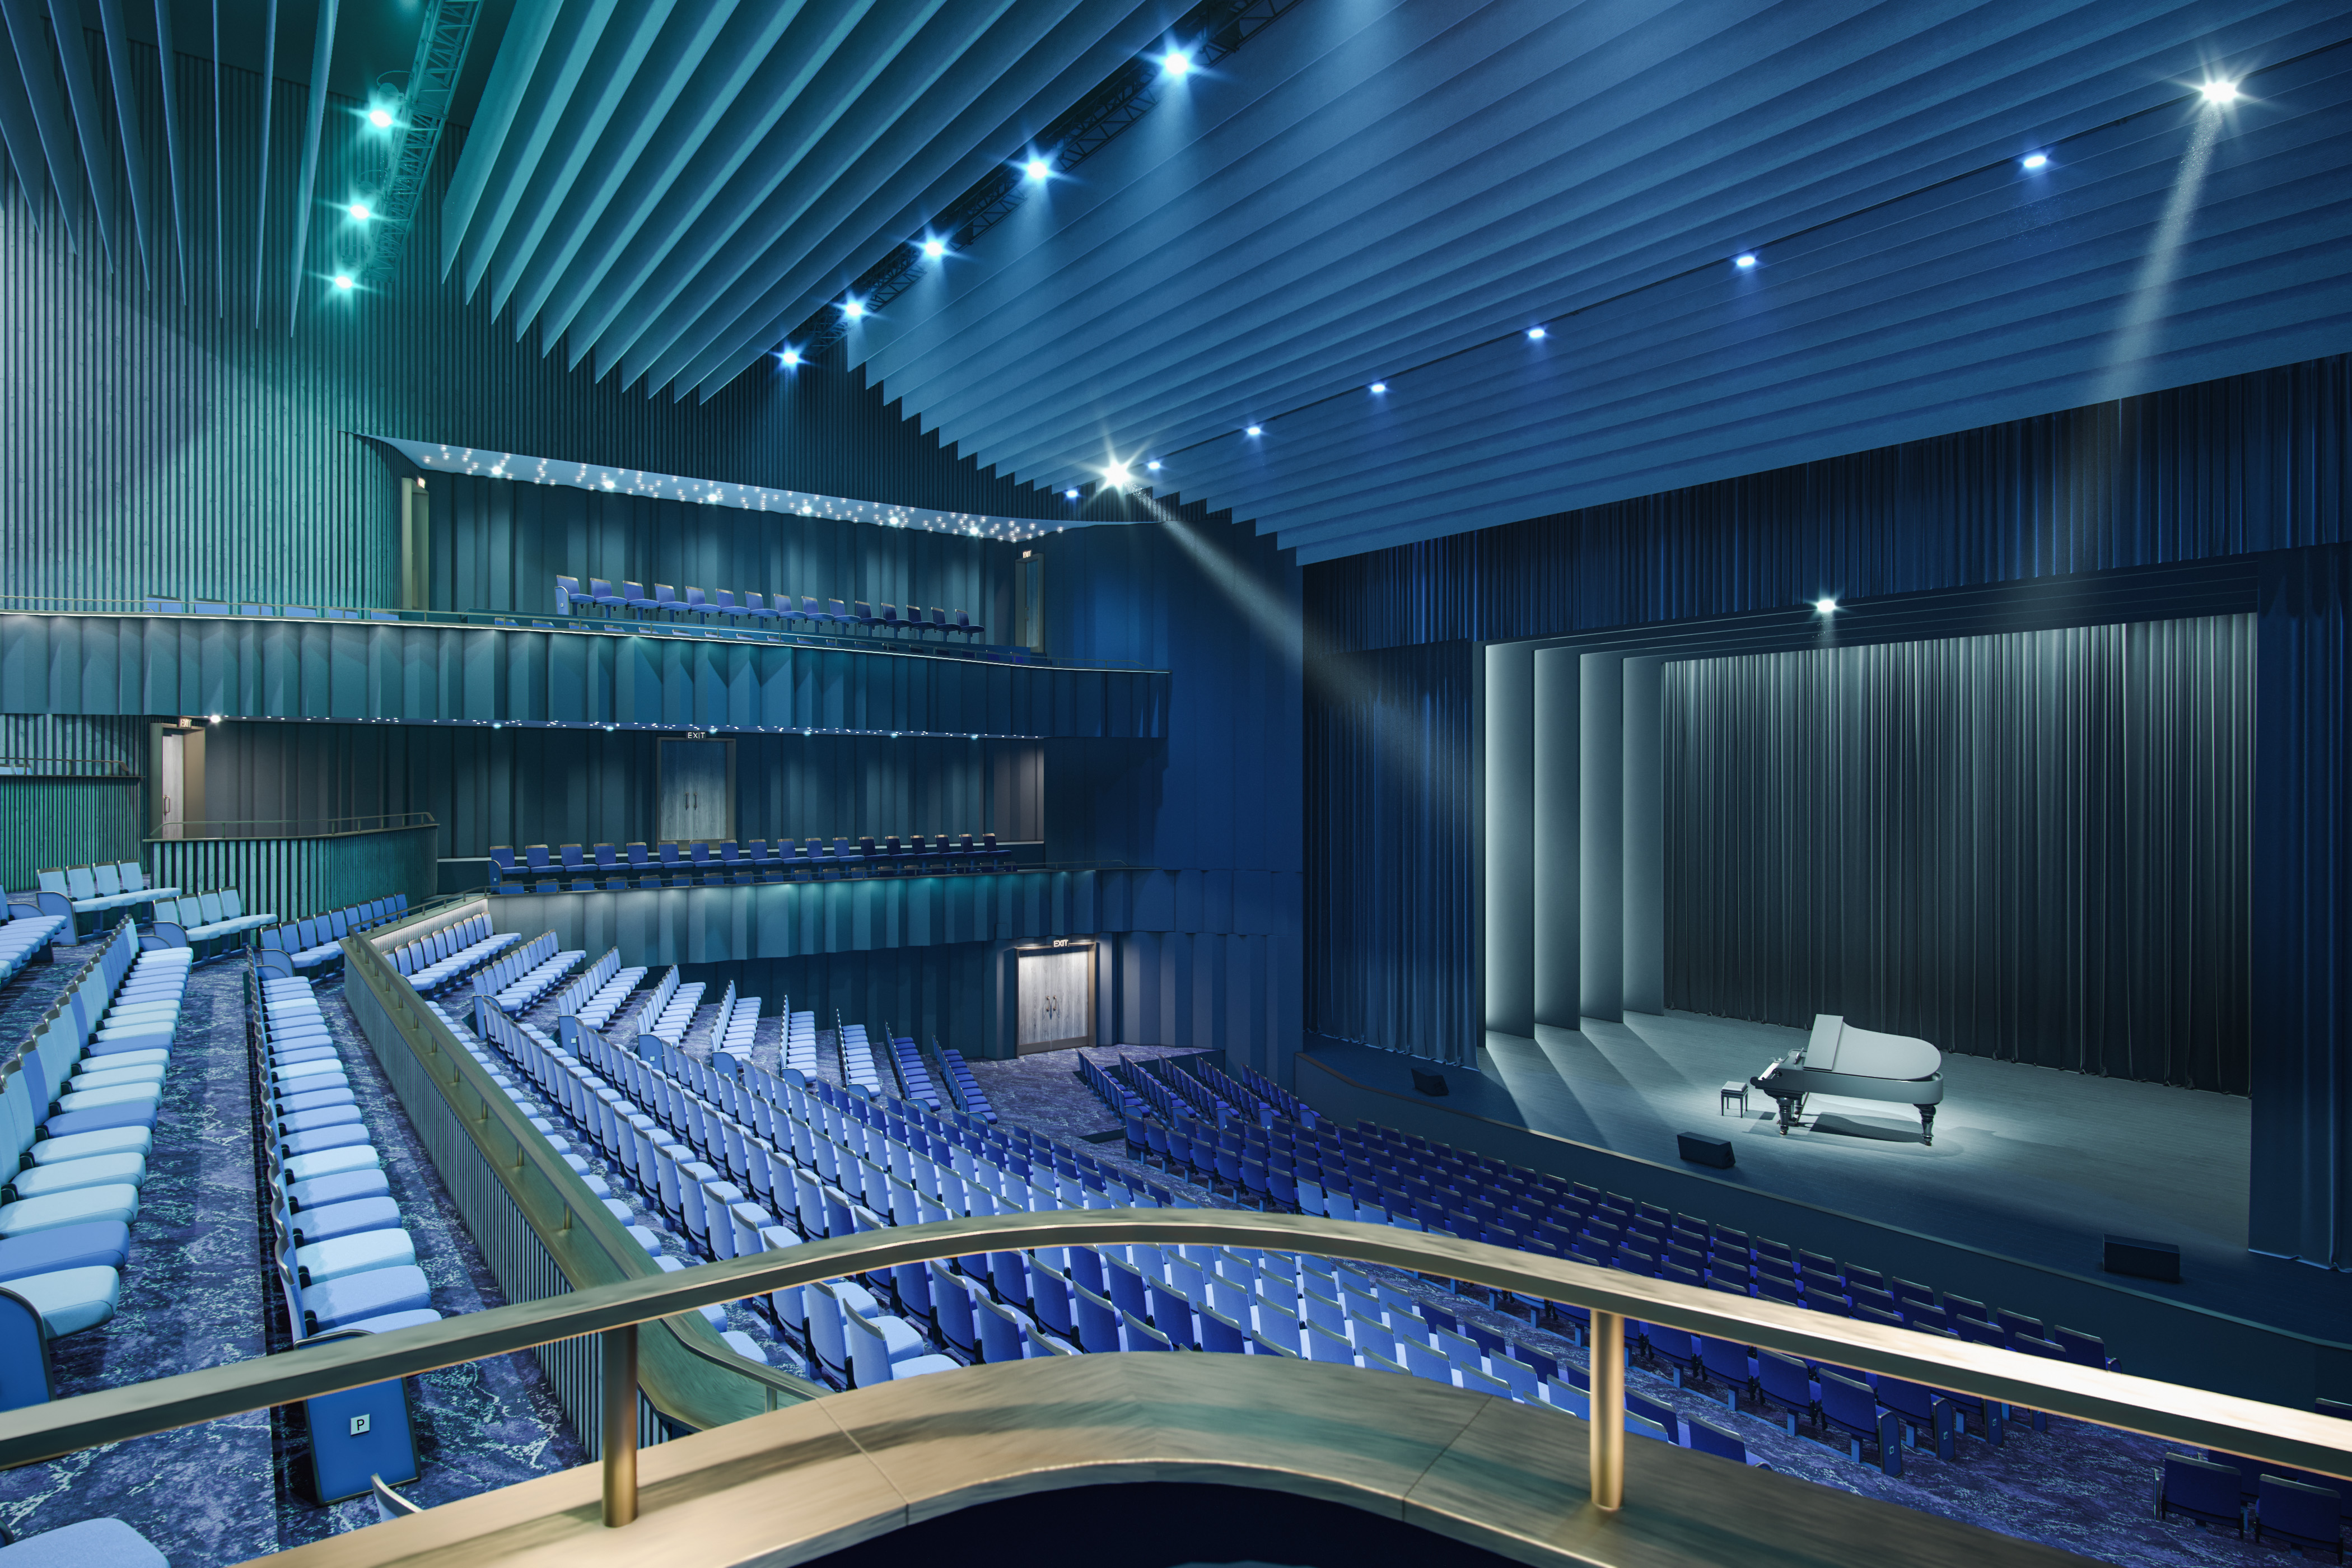 Image of proposed Marine Lake Events Centre Auditorium